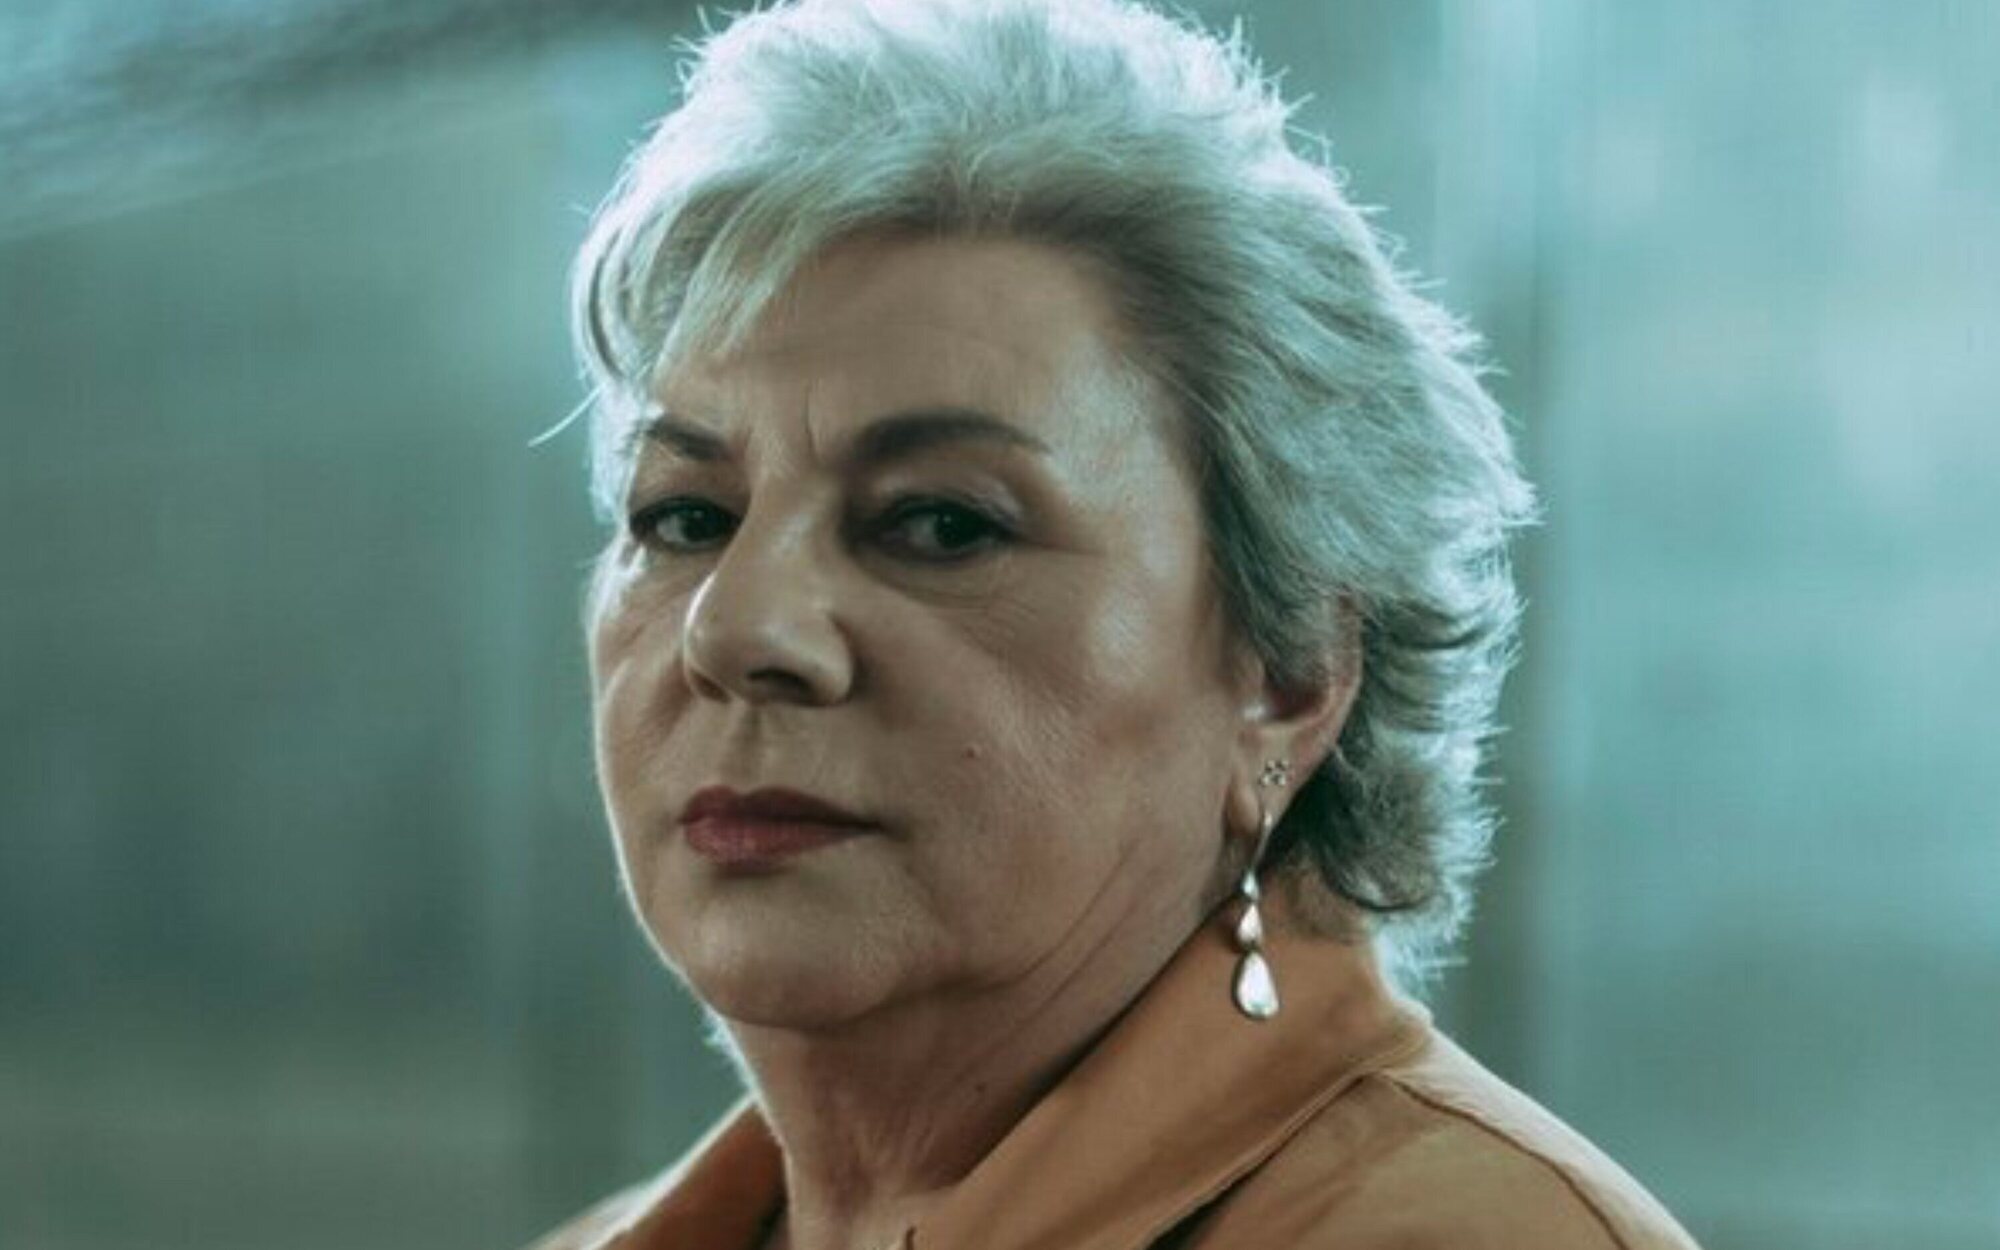 'Dolores, la verdad sobre el caso Wanninkhof' se estrena en Telecinco el 21 de noviembre